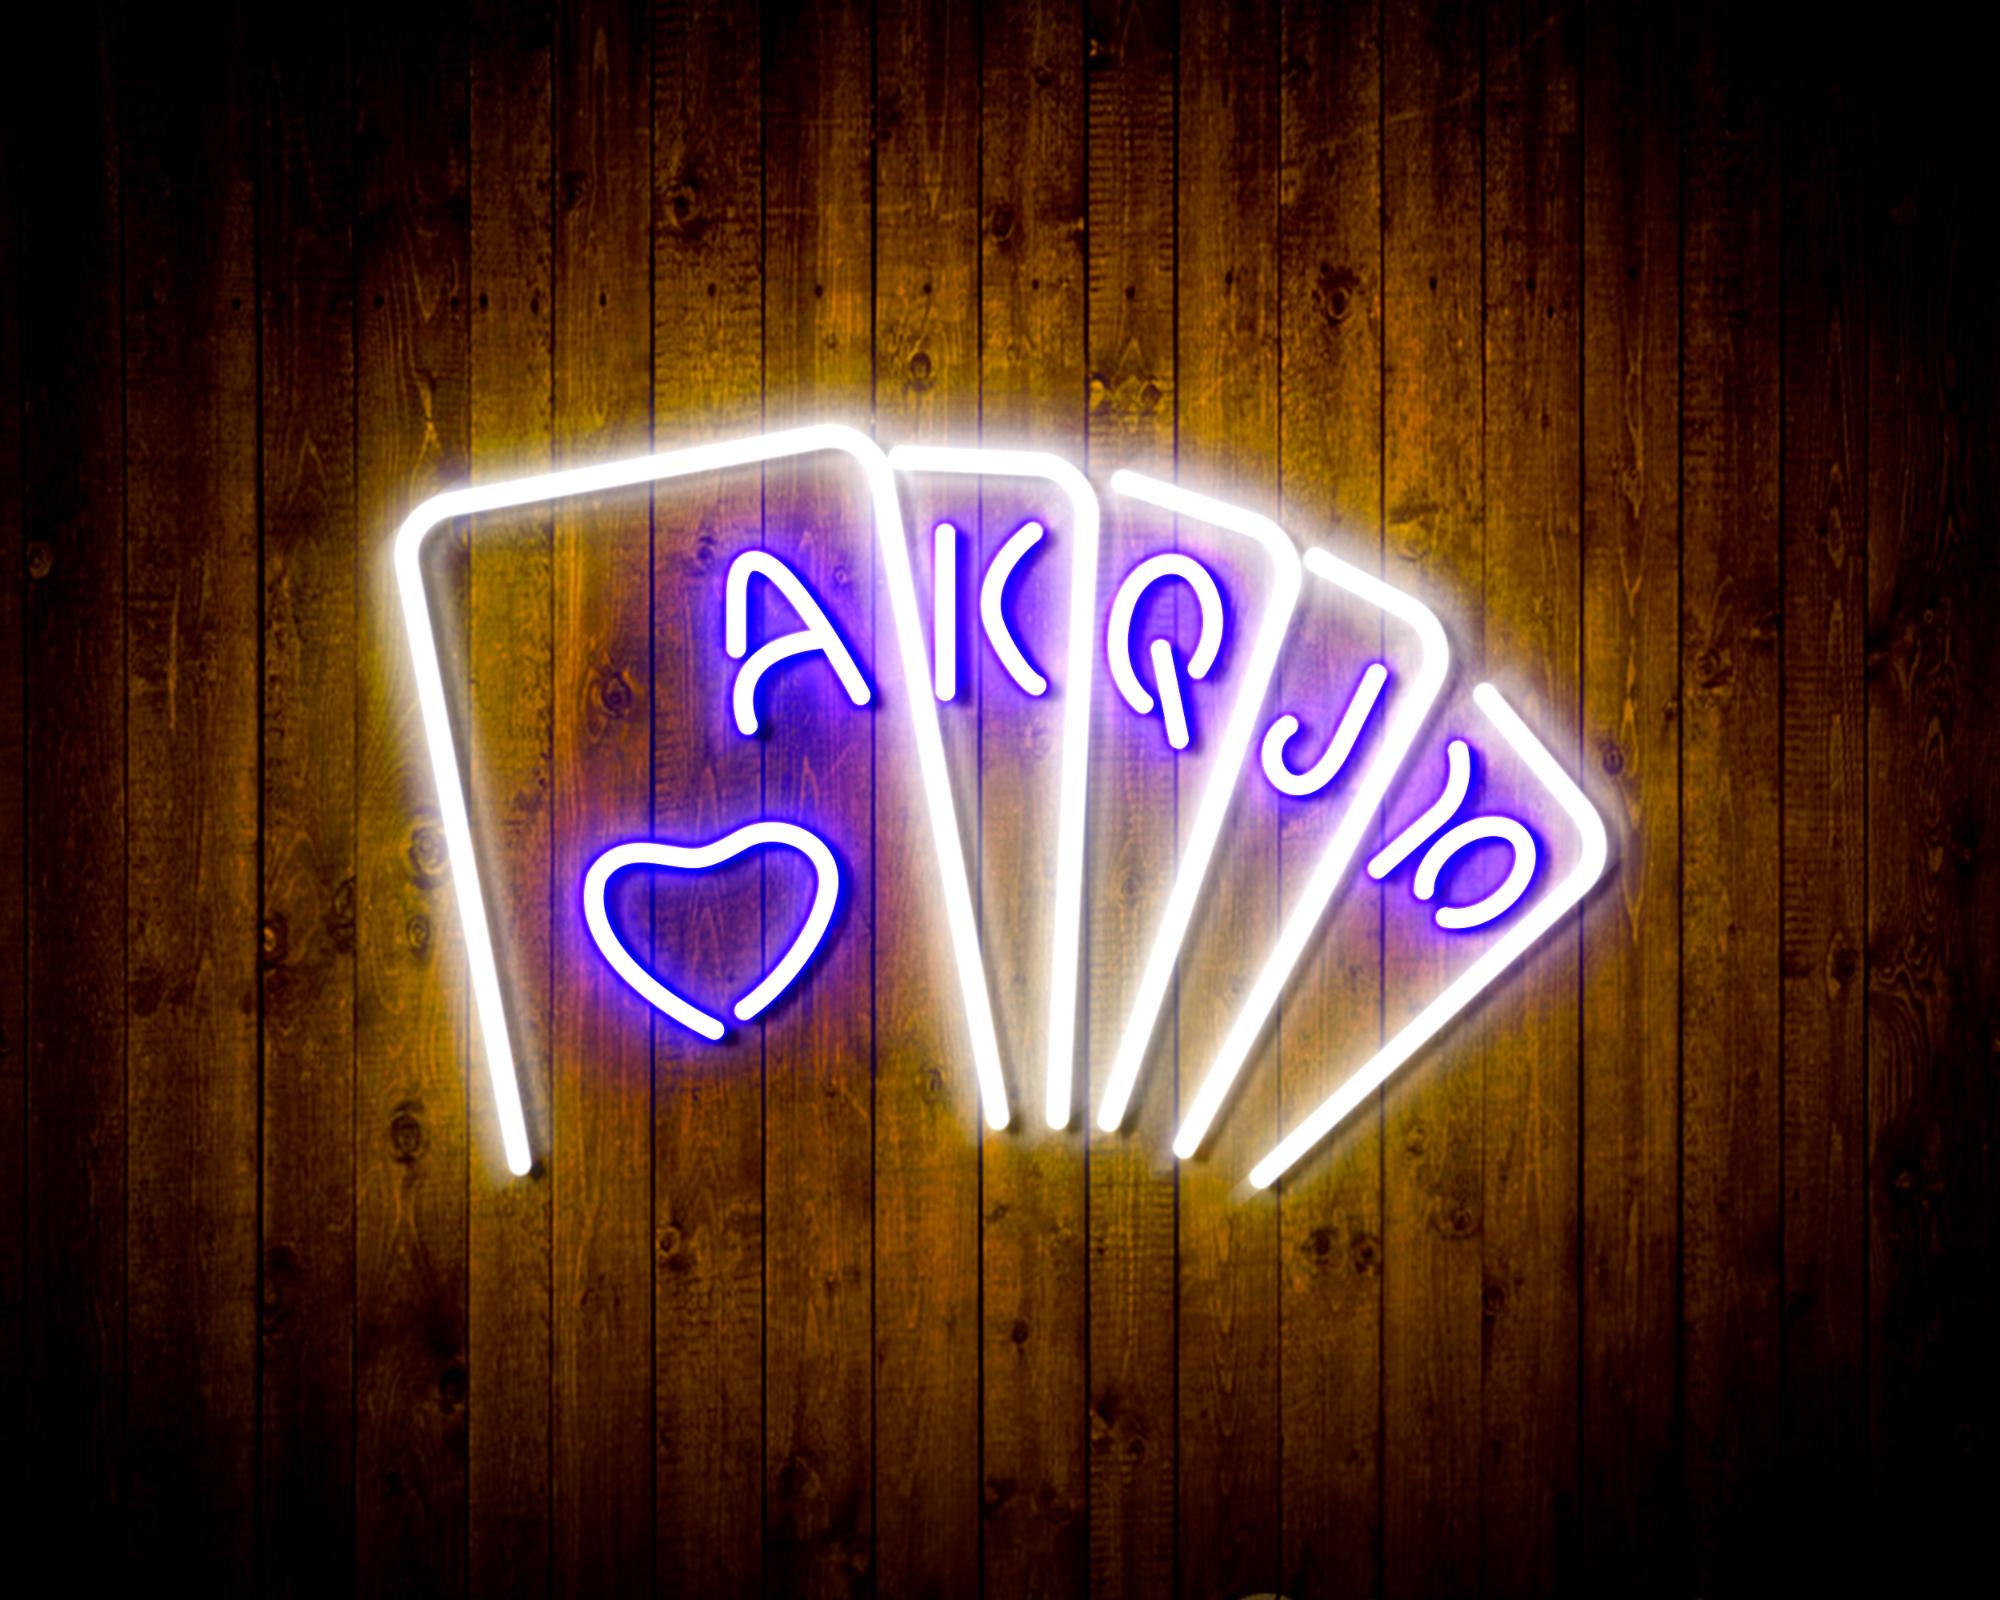 Poker LED Neon Sign Wall Light